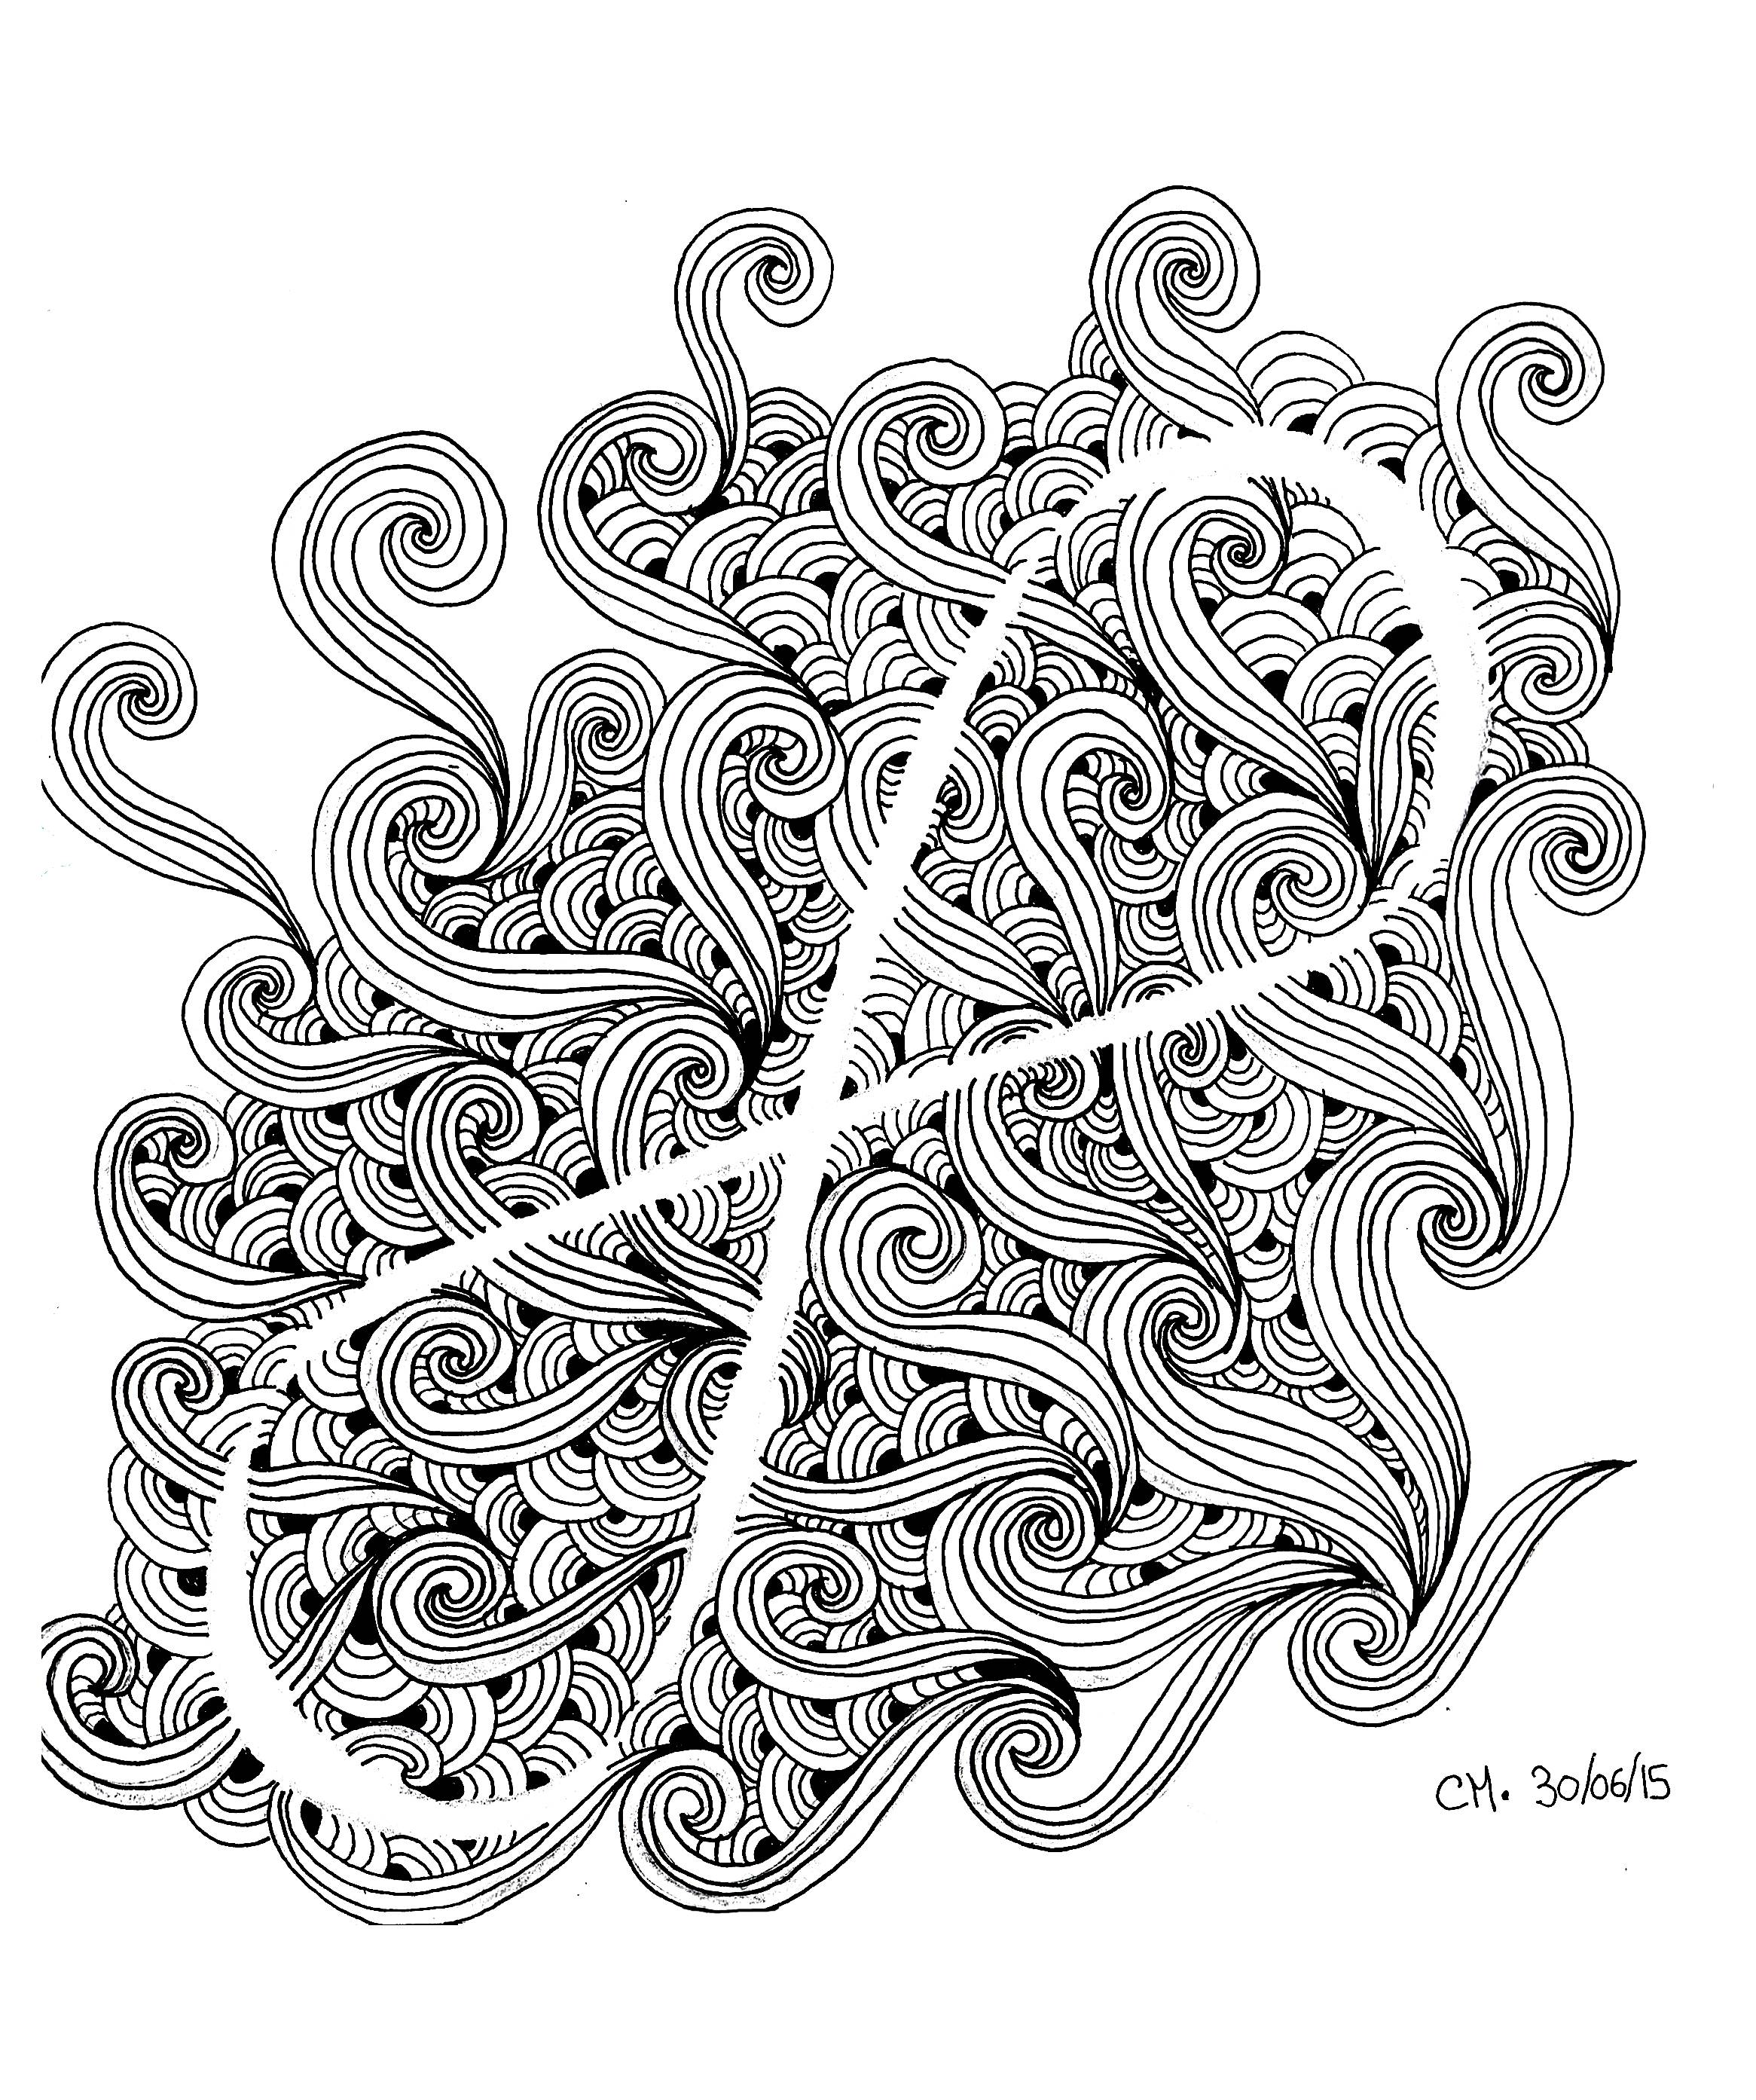 'Doodle infini', coloriage original estilo Zentangle, Artista : Cathy M